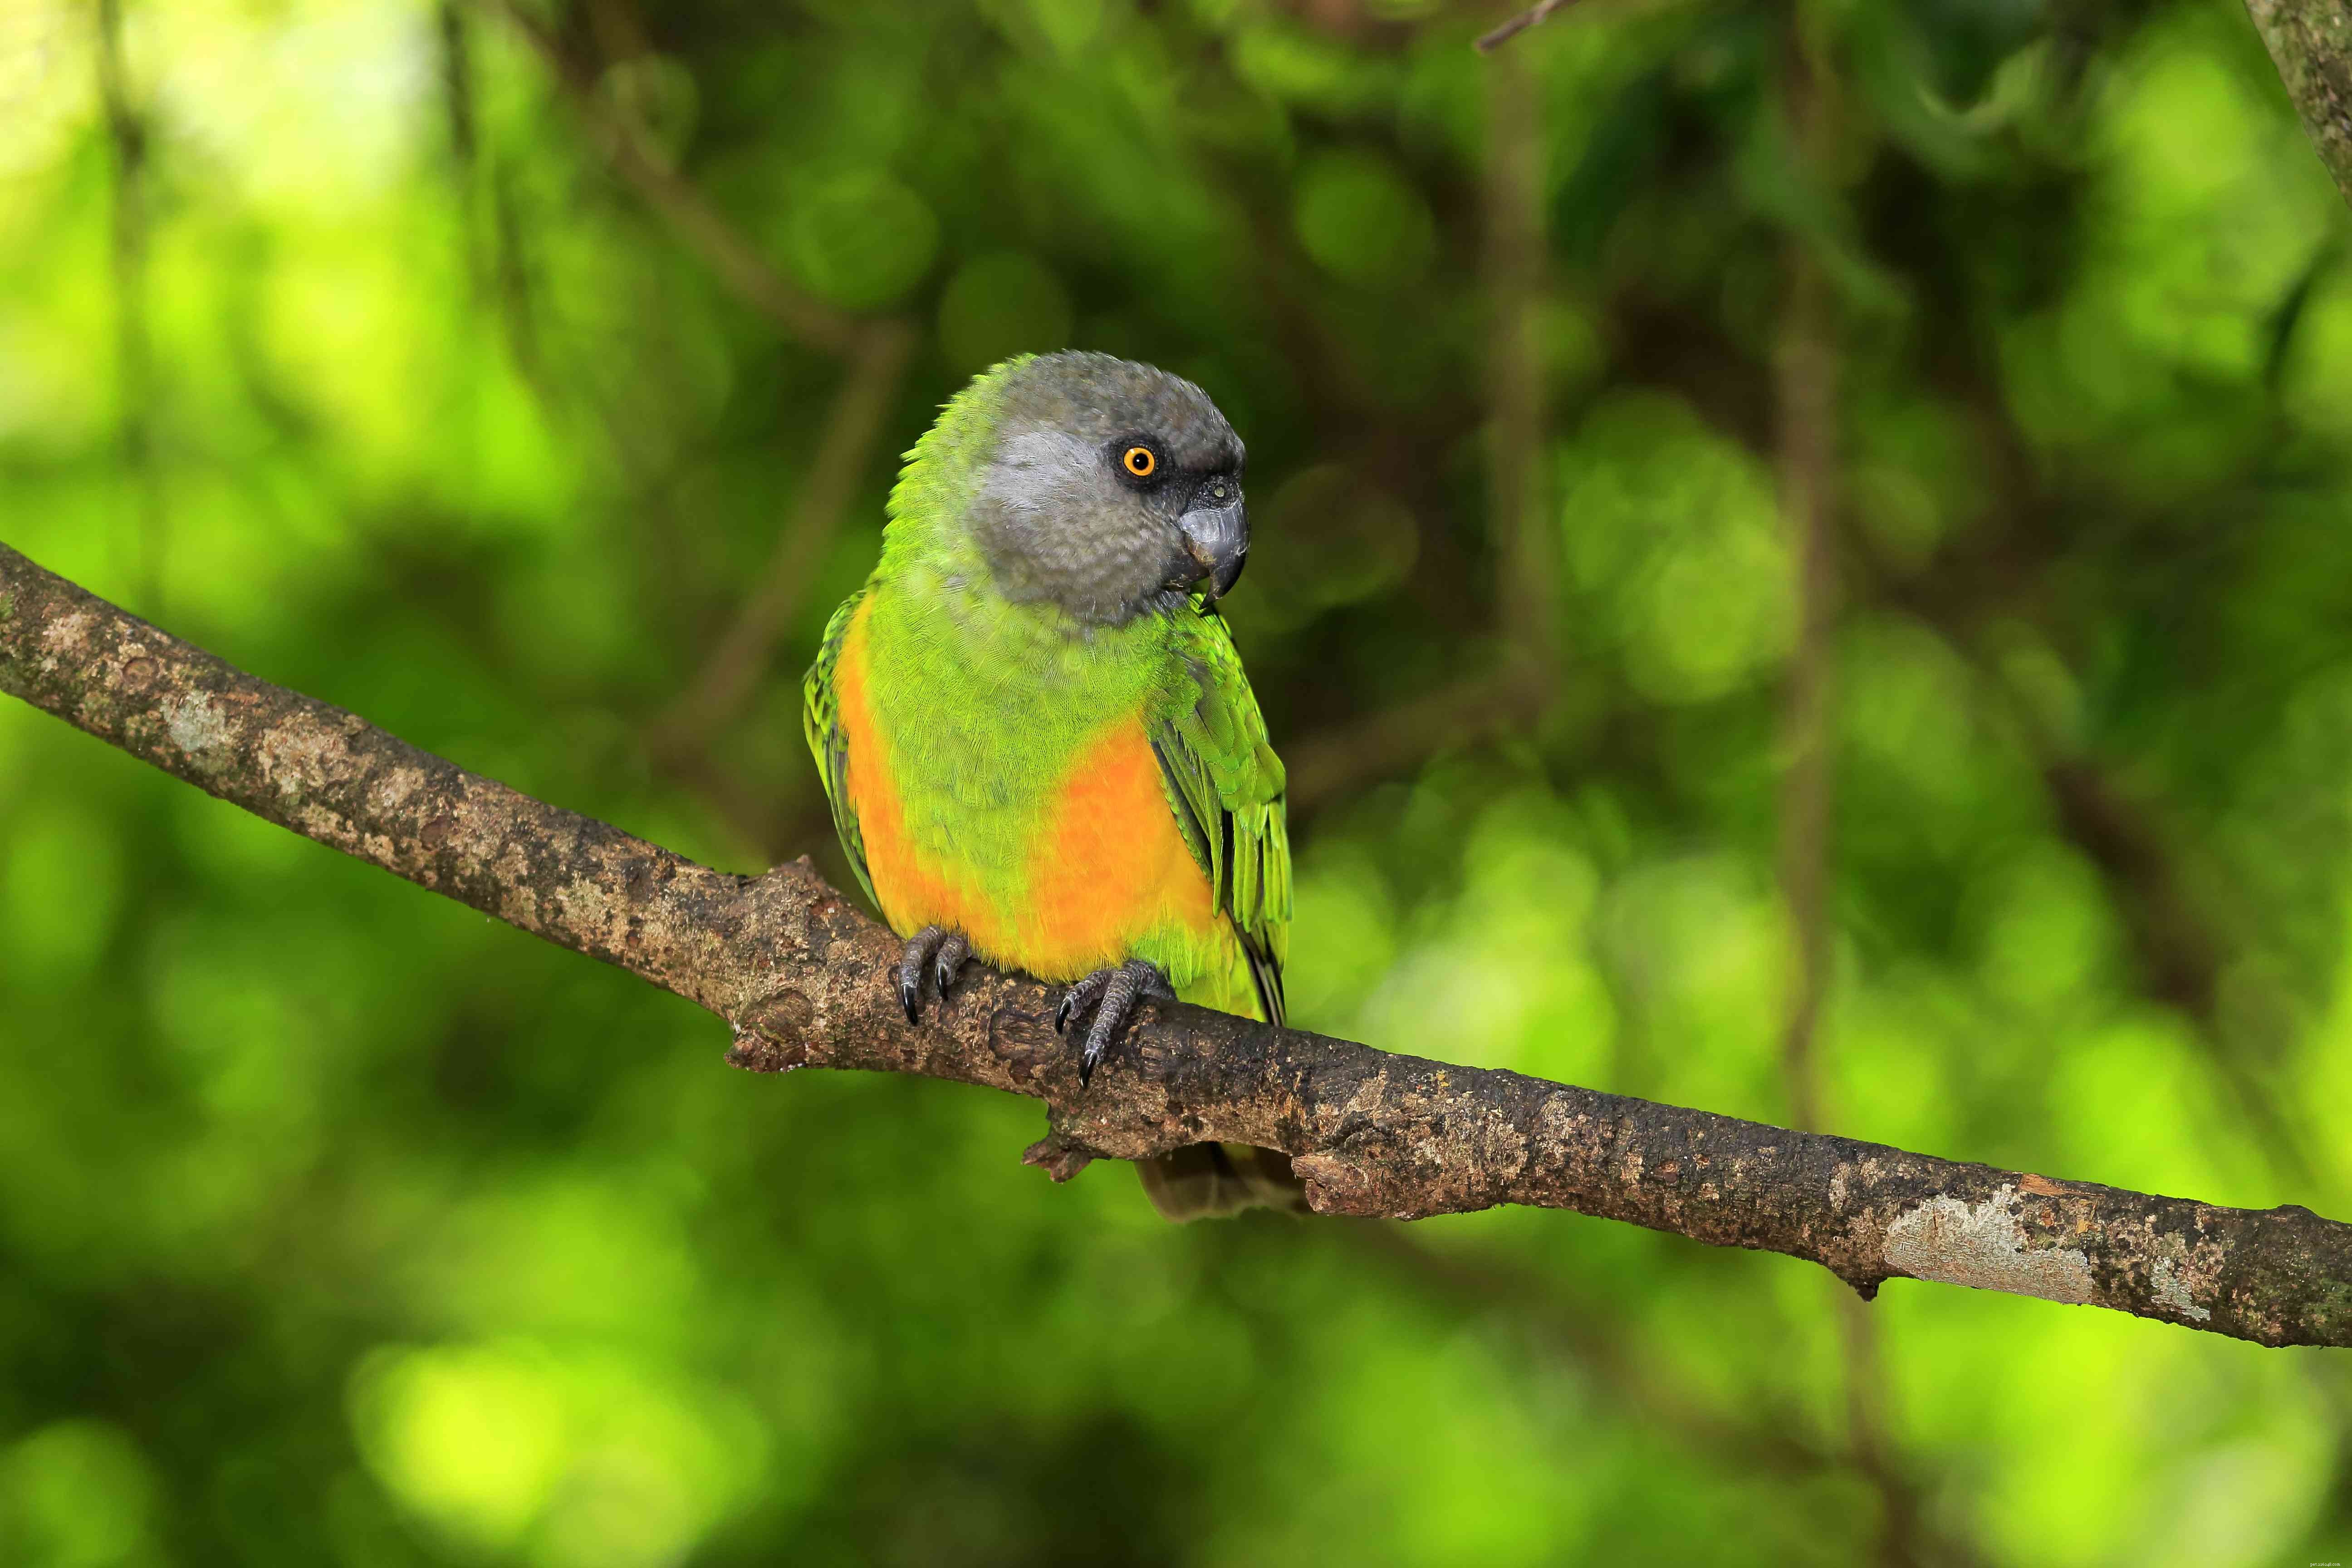 8 topp medelstora papegojor att hålla som husdjur